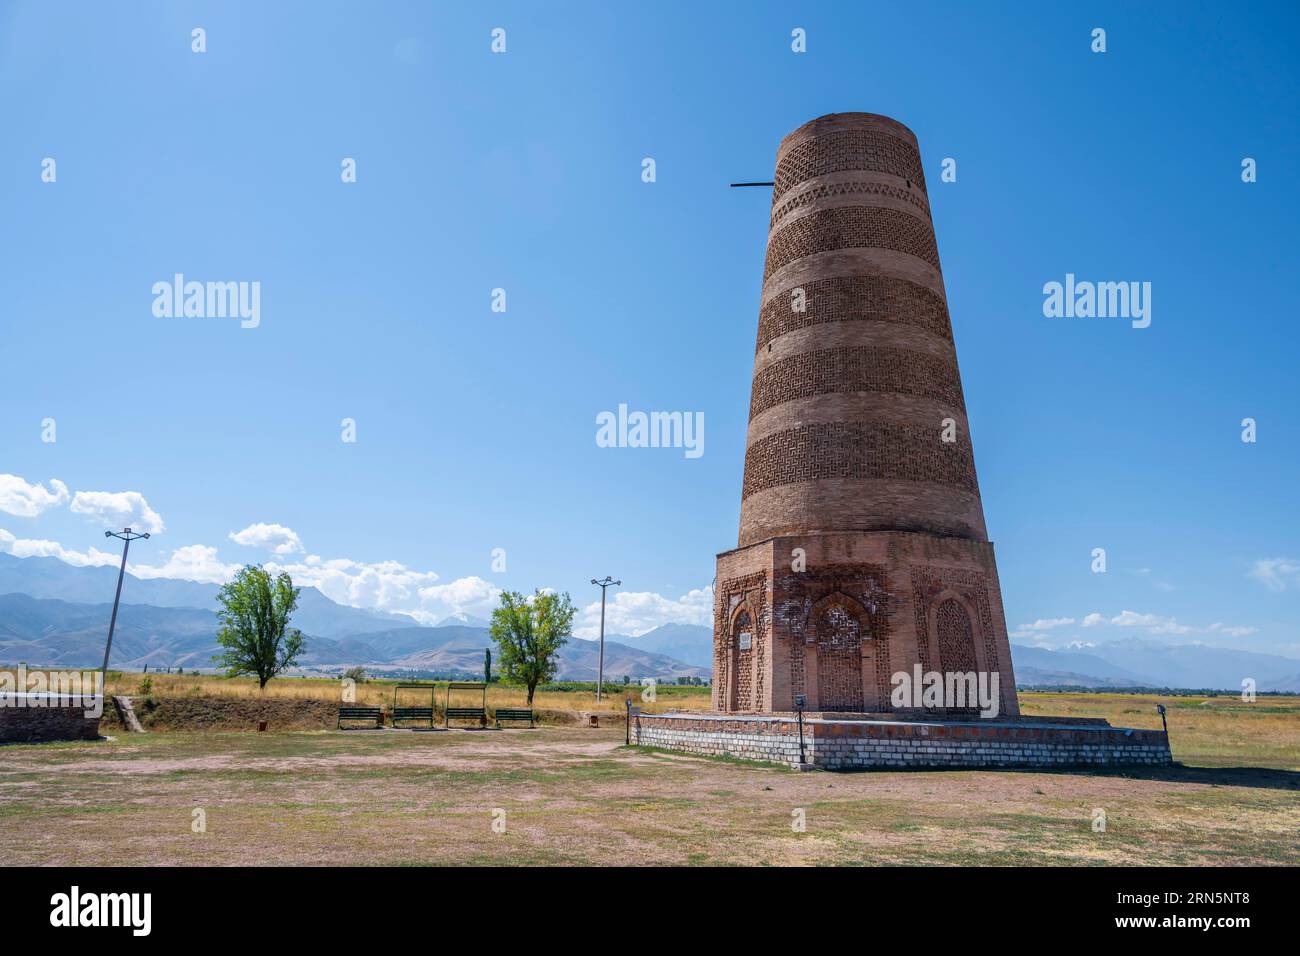 Torre di Burana, resti del minareto Karakhanide, antica città istroica di Balasagun sulla via della seta, balbali, pietre tombali storiche a forma di uomo Foto Stock